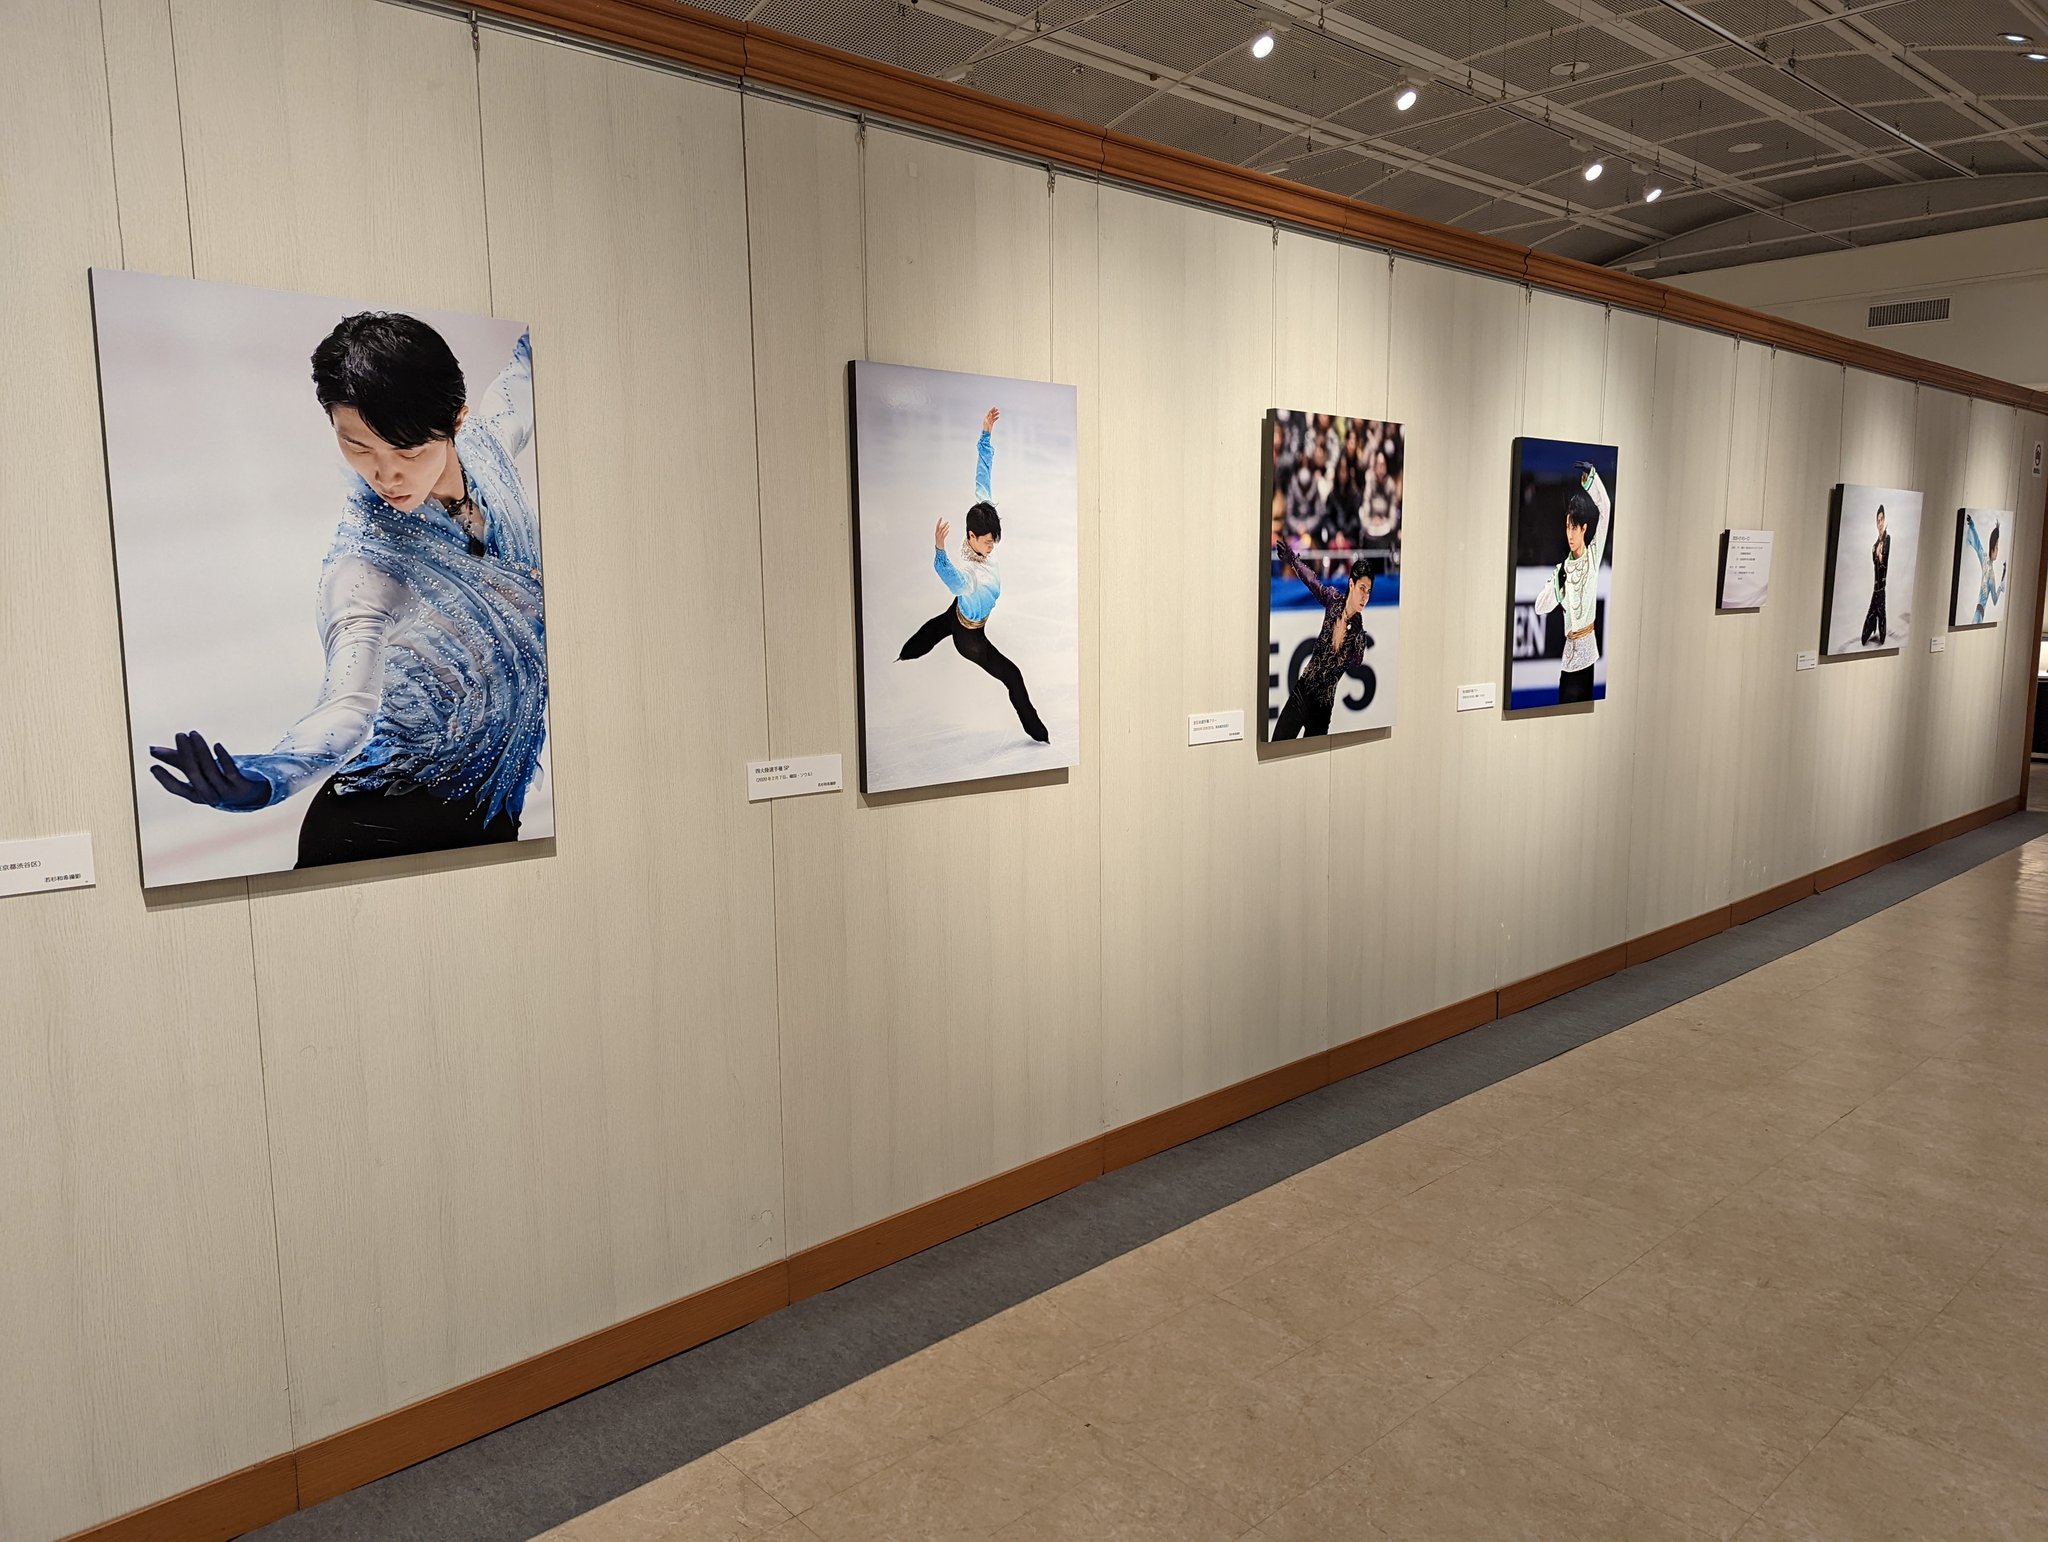 Yuzuru Hanyu Exhibition 2022